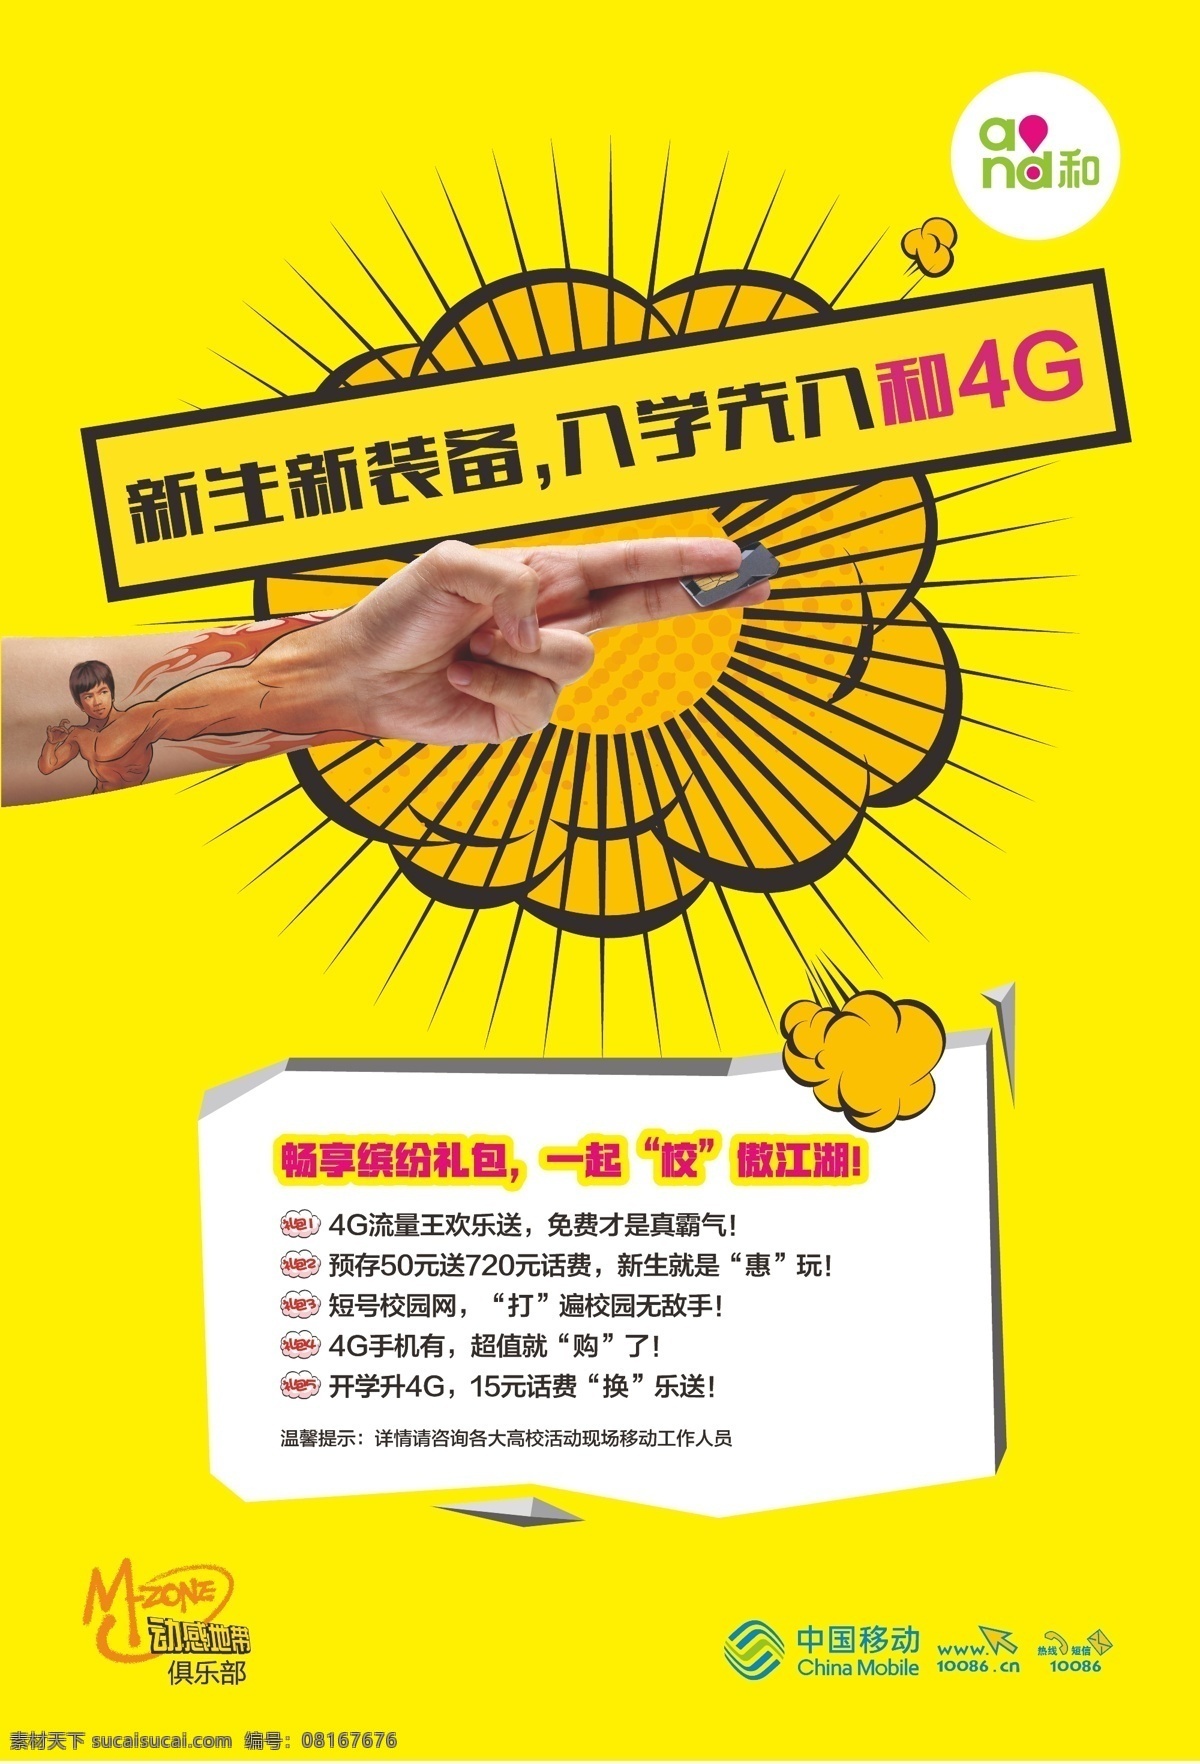 中国移动 新生 入学 海报 logo 中国移动海报 入学海报 and 动感地带 矢量图 黄色